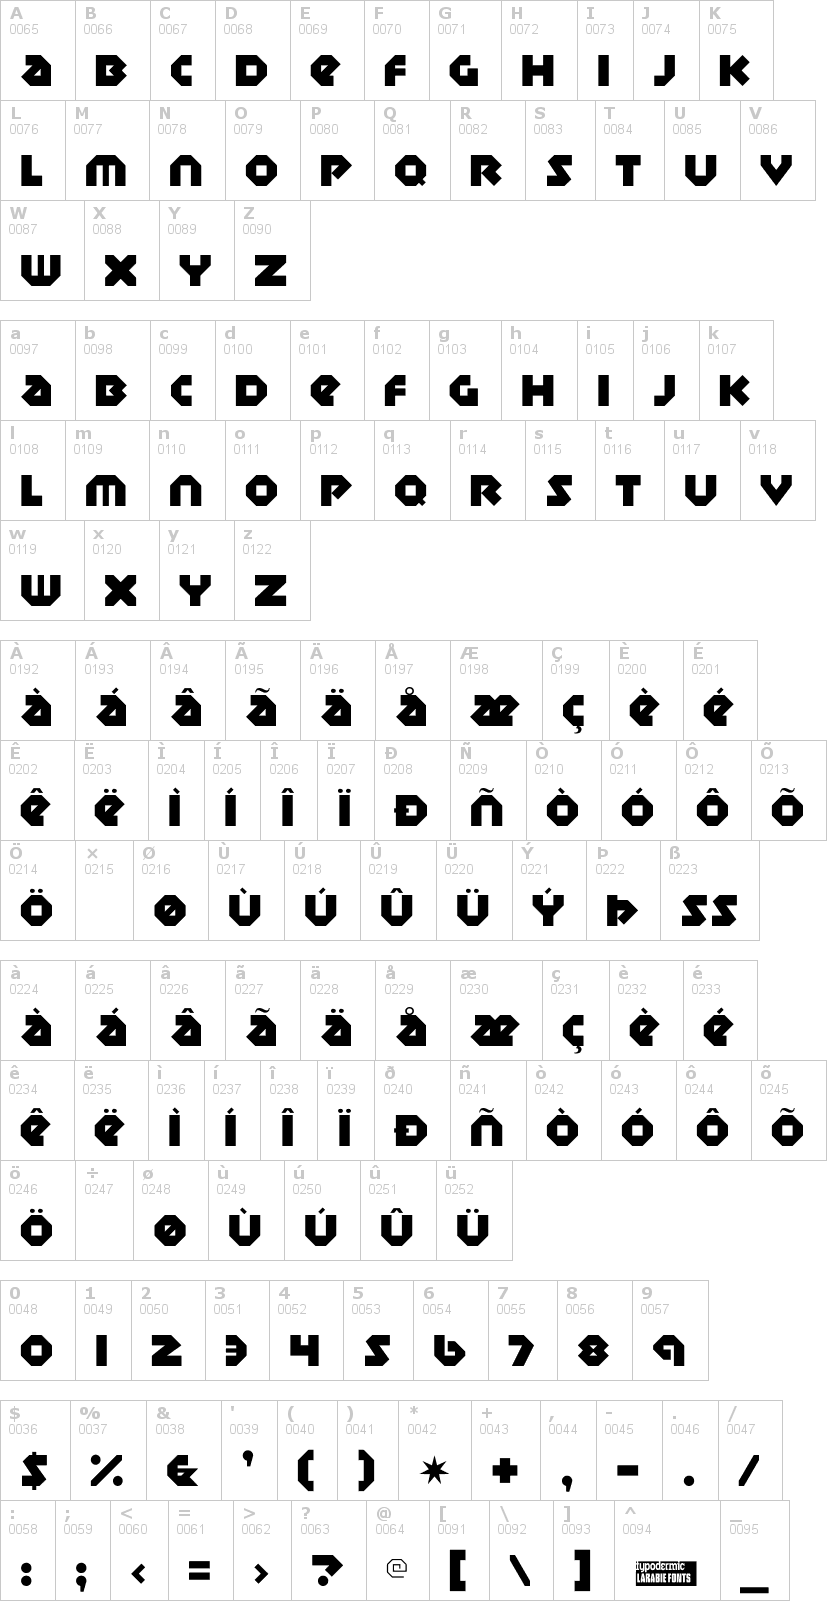 Lettere dell'alfabeto del font sudbury-basin con le quali è possibile realizzare adesivi prespaziati